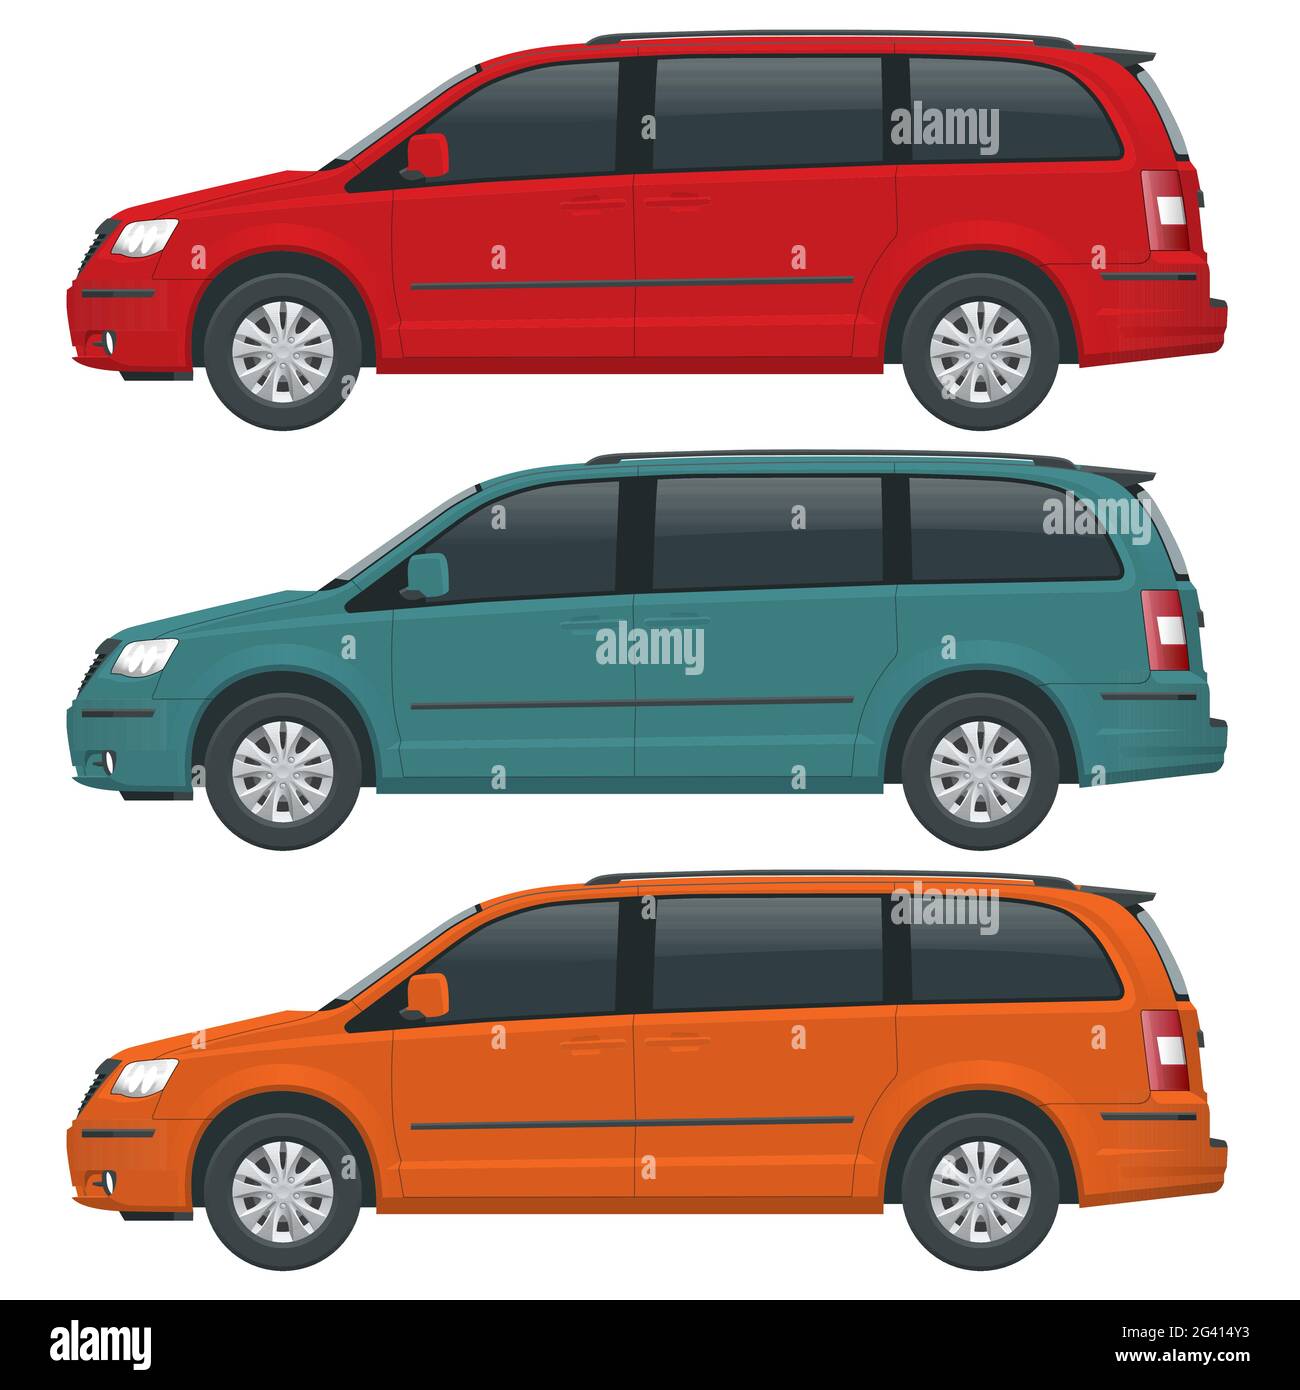 Vektor-Vorlage für Personenkraftwagen oder Minivan-Fahrzeuge auf weißem Hintergrund. Kompakter Crossover, SUV, 5-türiger Kleinbus. Ansichtsseite Stock Vektor